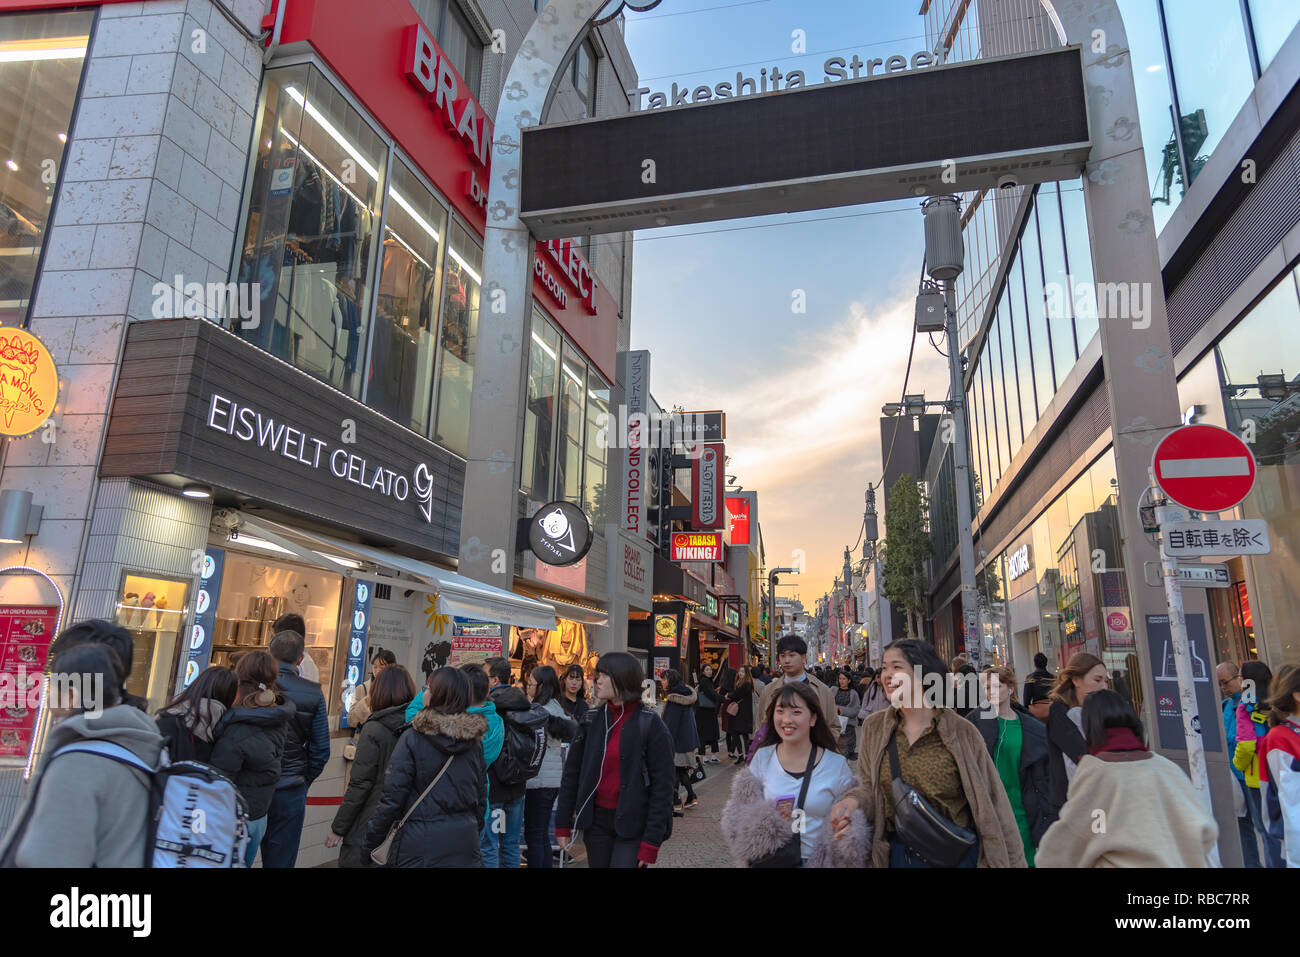 Harajuku Street view. Personnes, surtout des jeunes, à pied à travers Takeshita Street, célèbre rue commerçante bordée de boutiques de mode, cafés et resta Banque D'Images